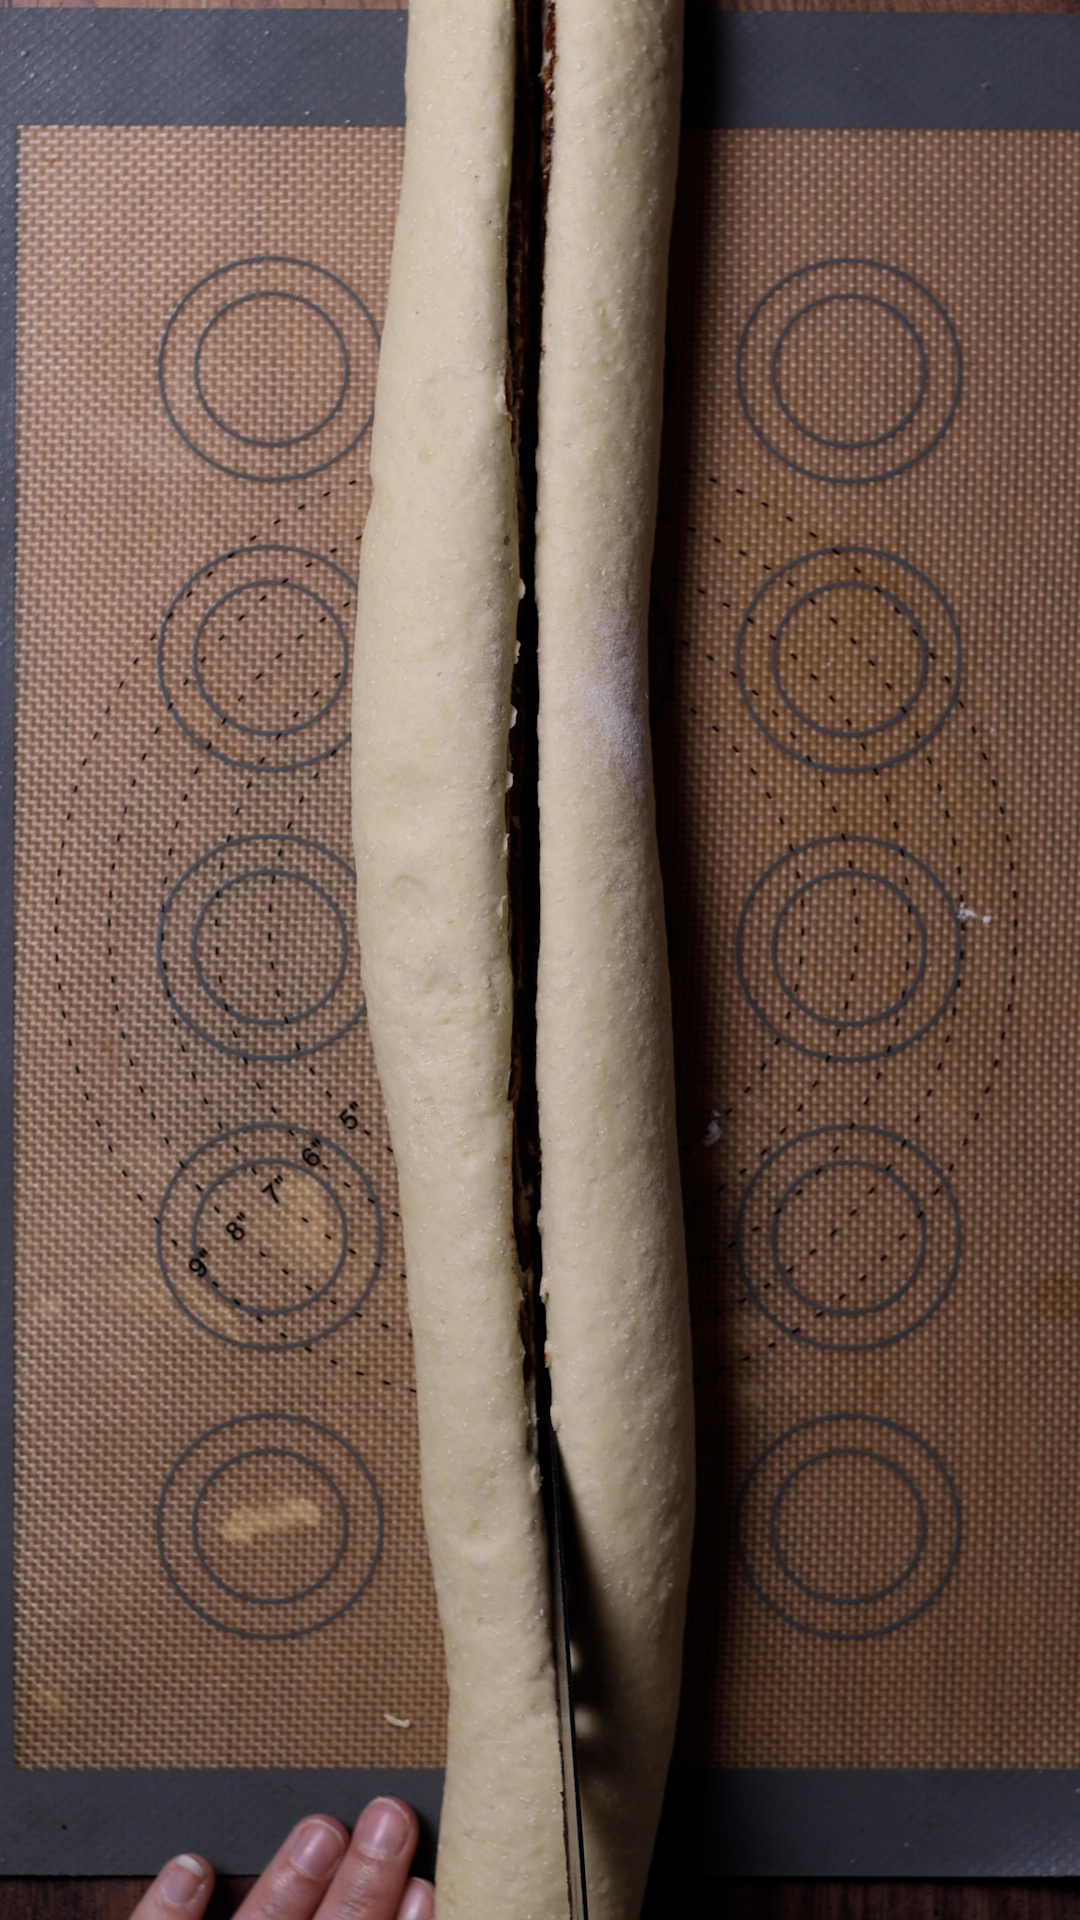 the babka dough cut in halves